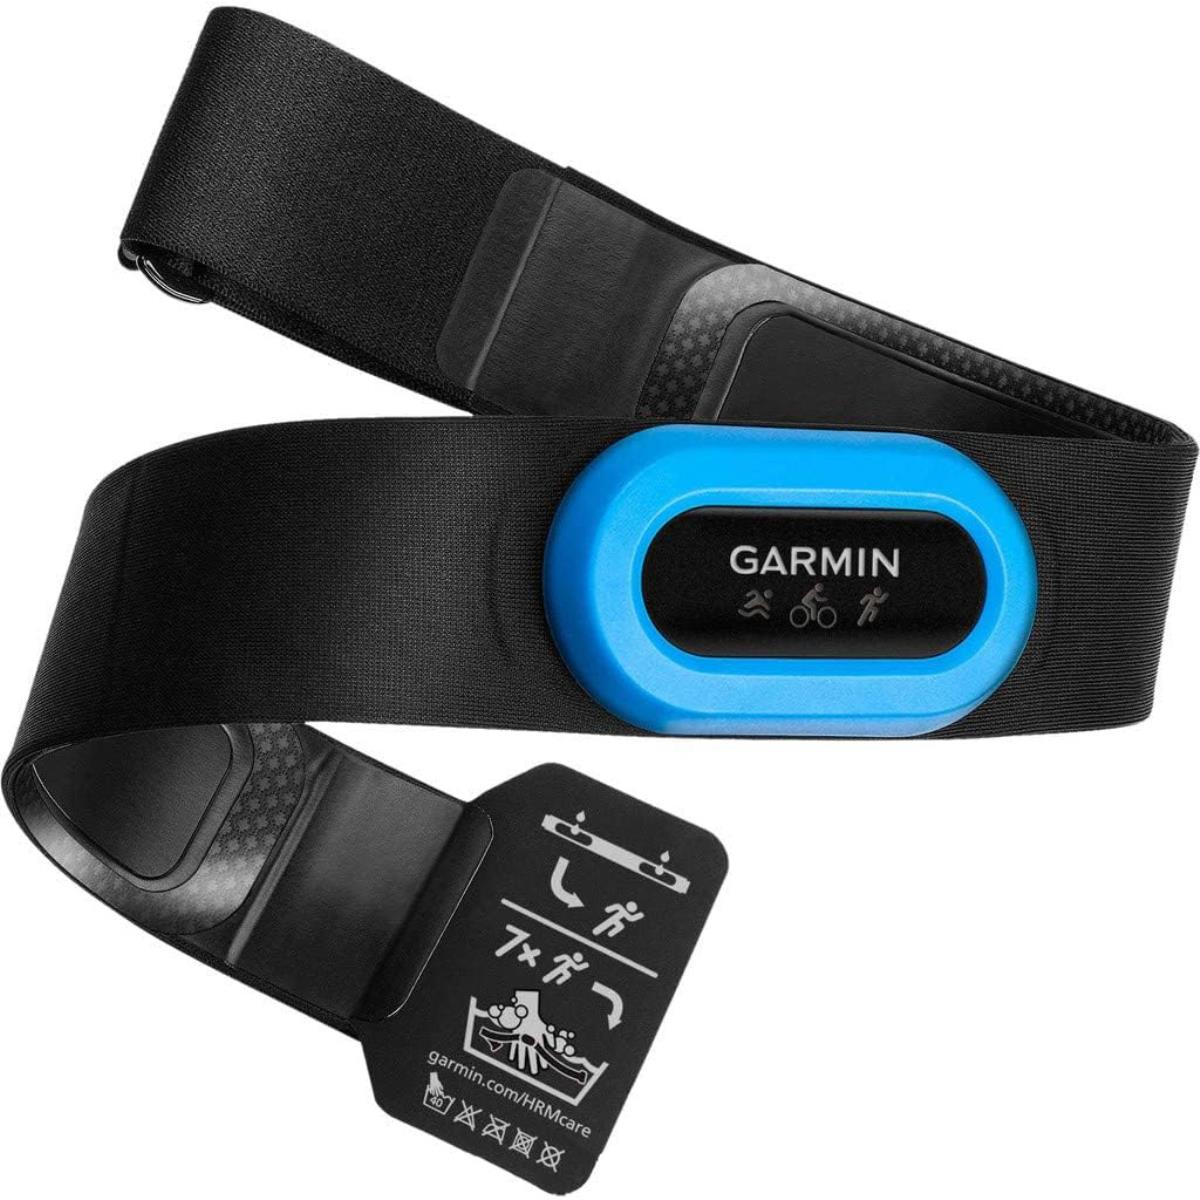 Pulsómetros y relojes deportivos Garmin con cinta pecho - Ofertas